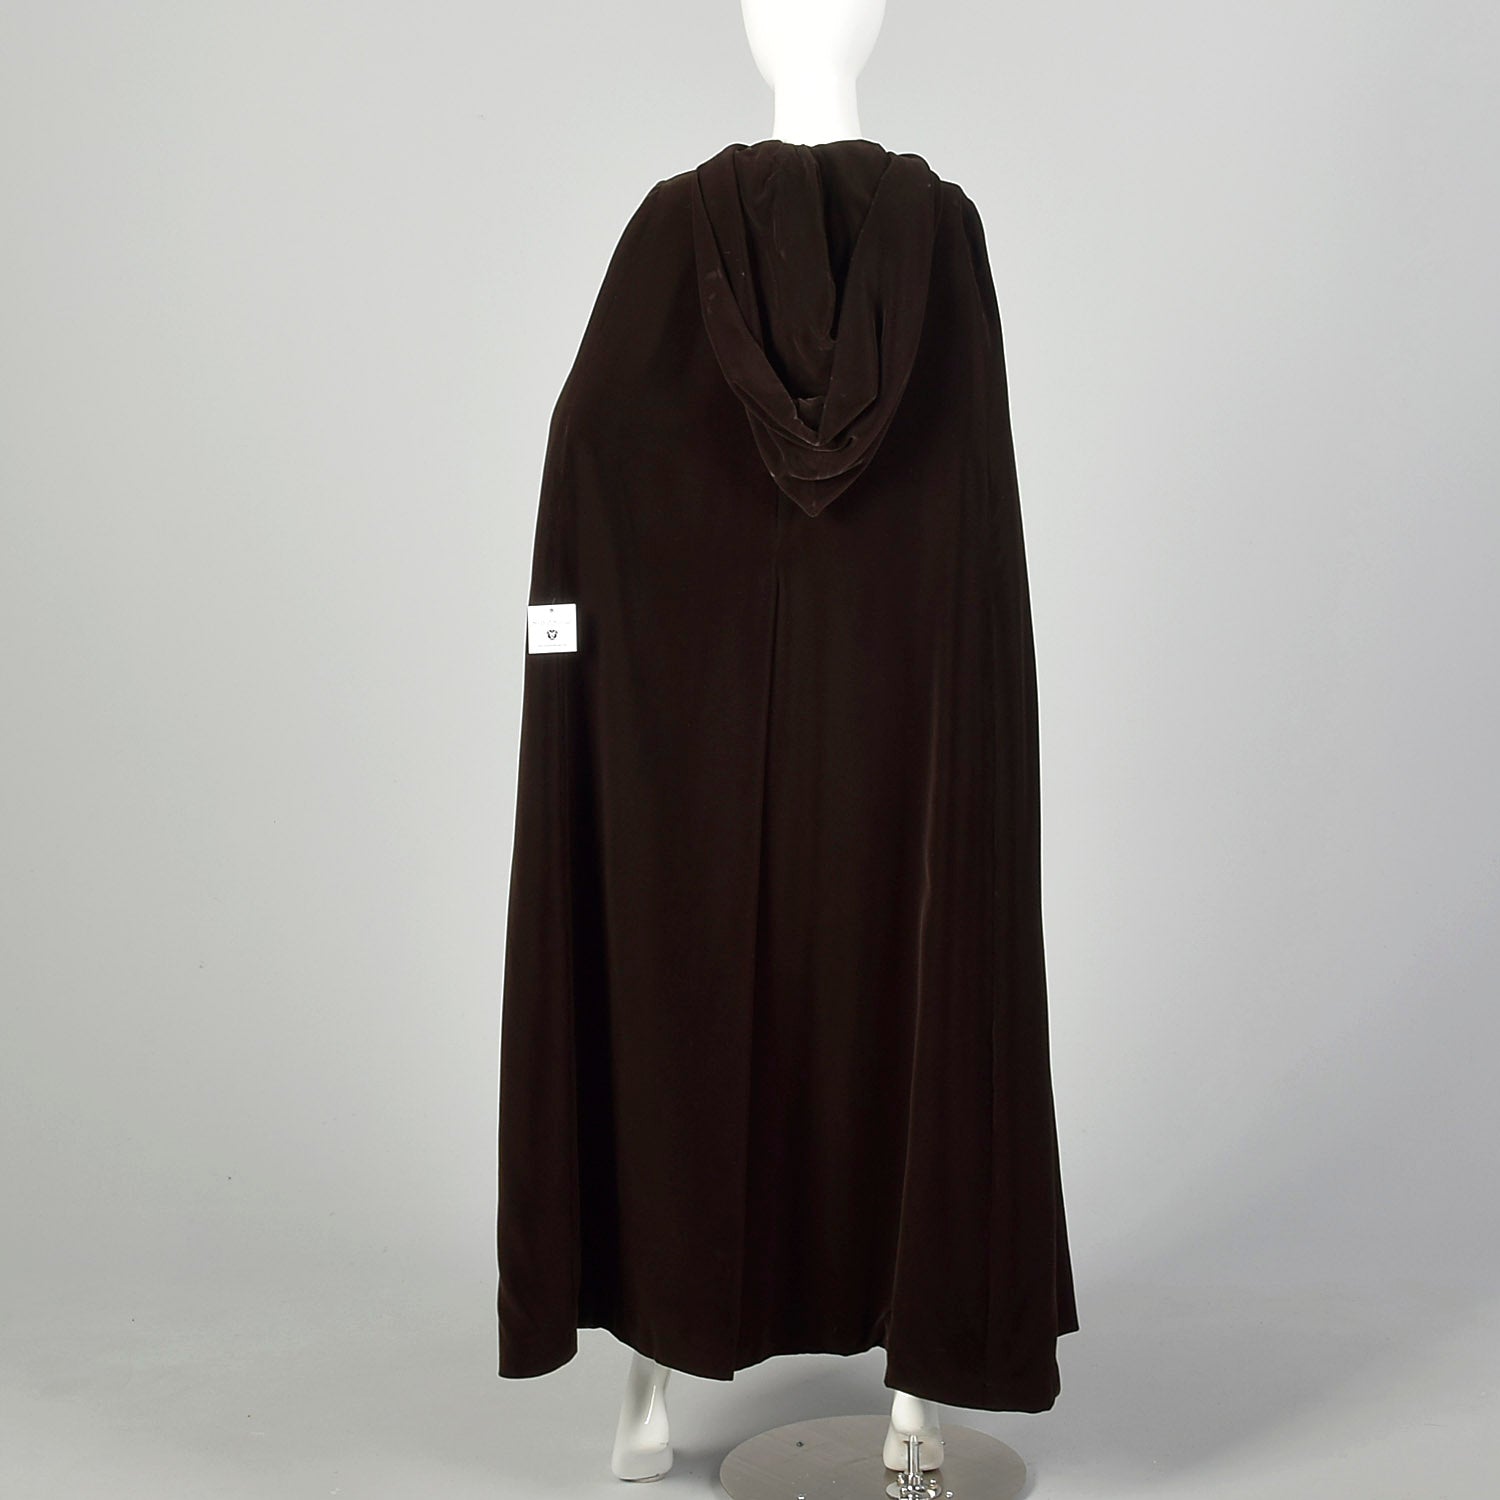 Medium 1970s Cape Brown Velvet Hooded Cloak Winter Autumn